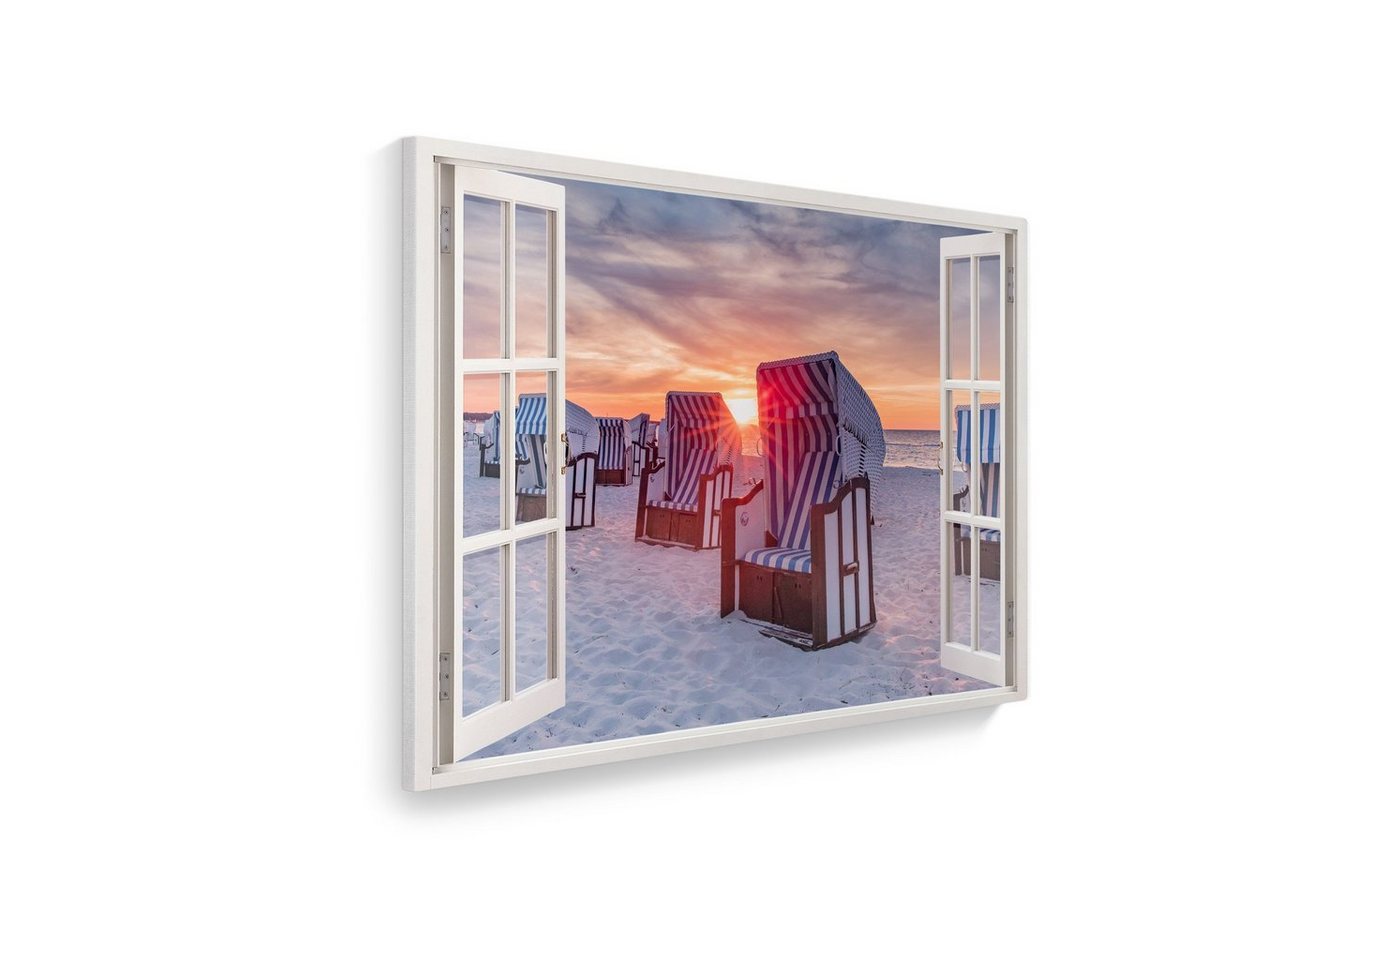 WallSpirit Leinwandbild Fenster mit Aussicht", Strandkörbe Sonnenuntergang, Leinwandbild geeignet für alle Wohnbereiche" von WallSpirit